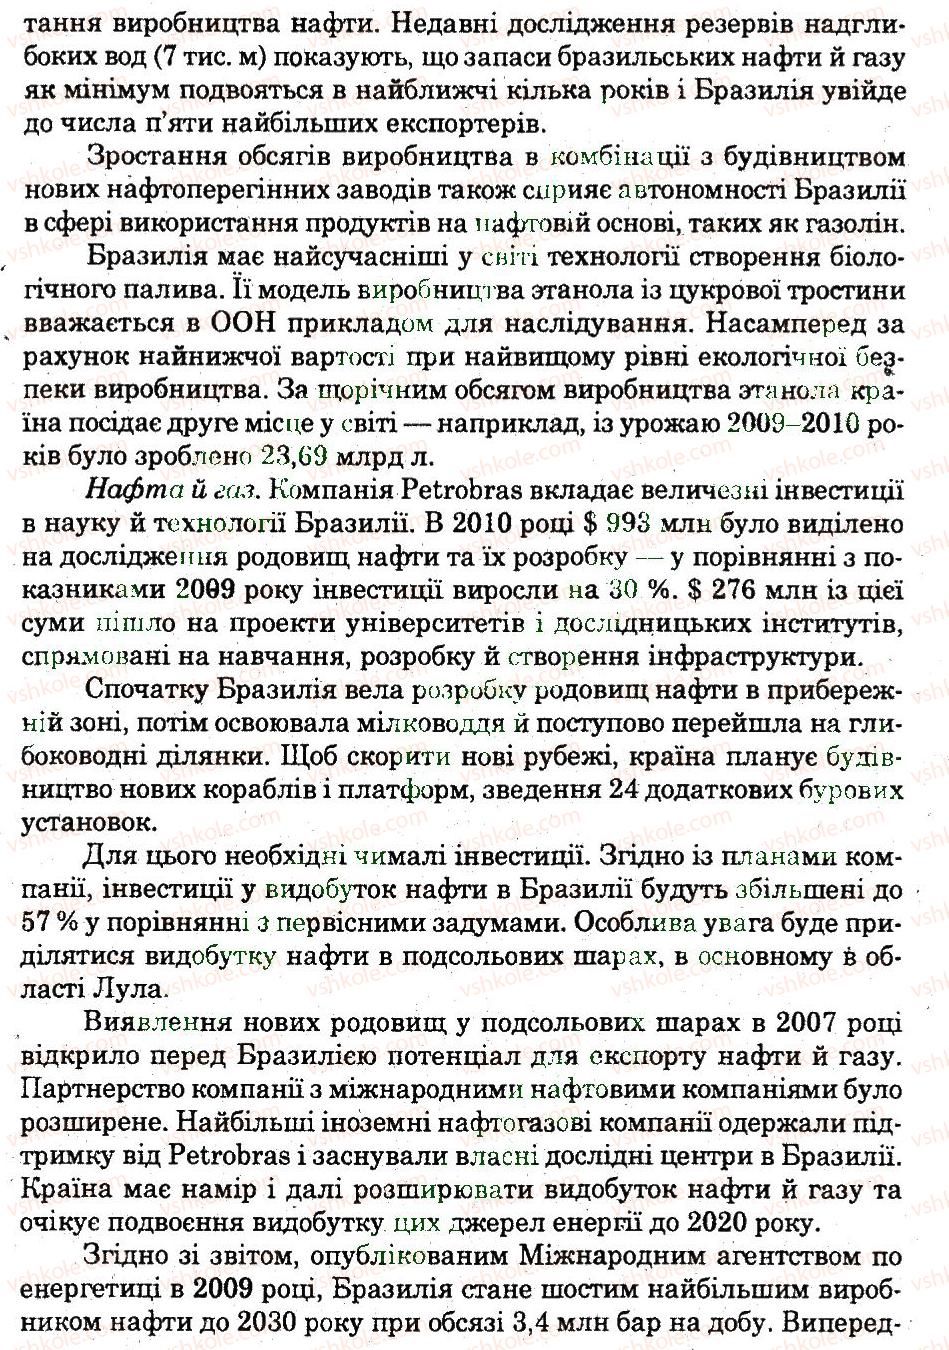 10-geografiya-og-stadnik-vf-vovk-2012-zoshit-dlya-praktichnih-robit--praktichni-roboti-praktichna-robota-2-ДЗ-rnd5197.jpg